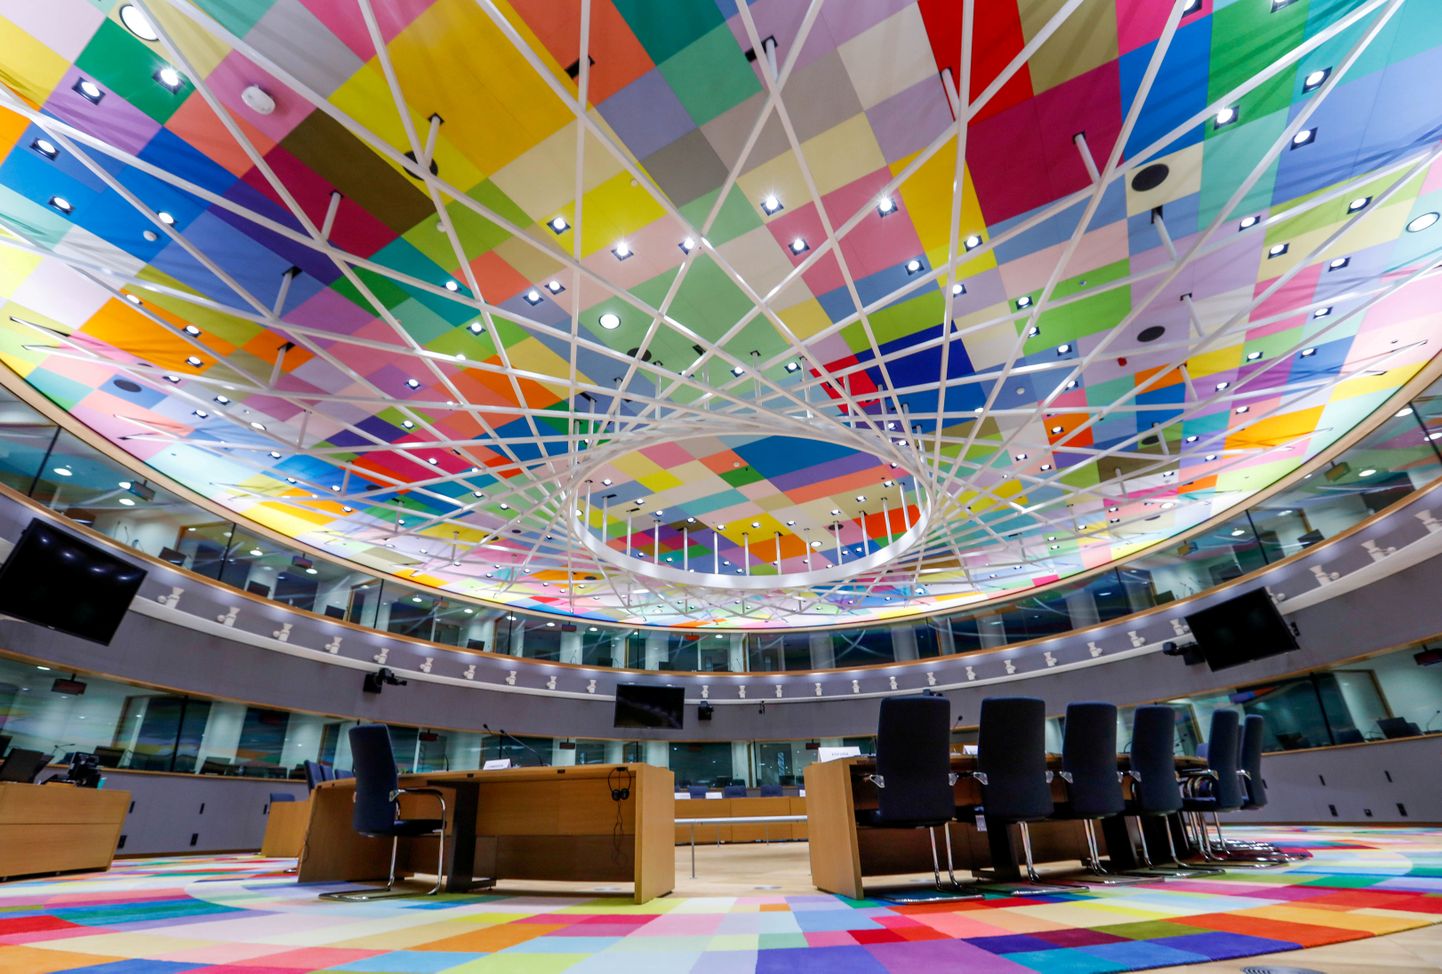 2016. aastal valmis Euroopa Liidu Nõukogu  uus hoone, mille koosolekusaali värvilahendus meenutab mitmekesisuse ja kaasavuse ideaale.